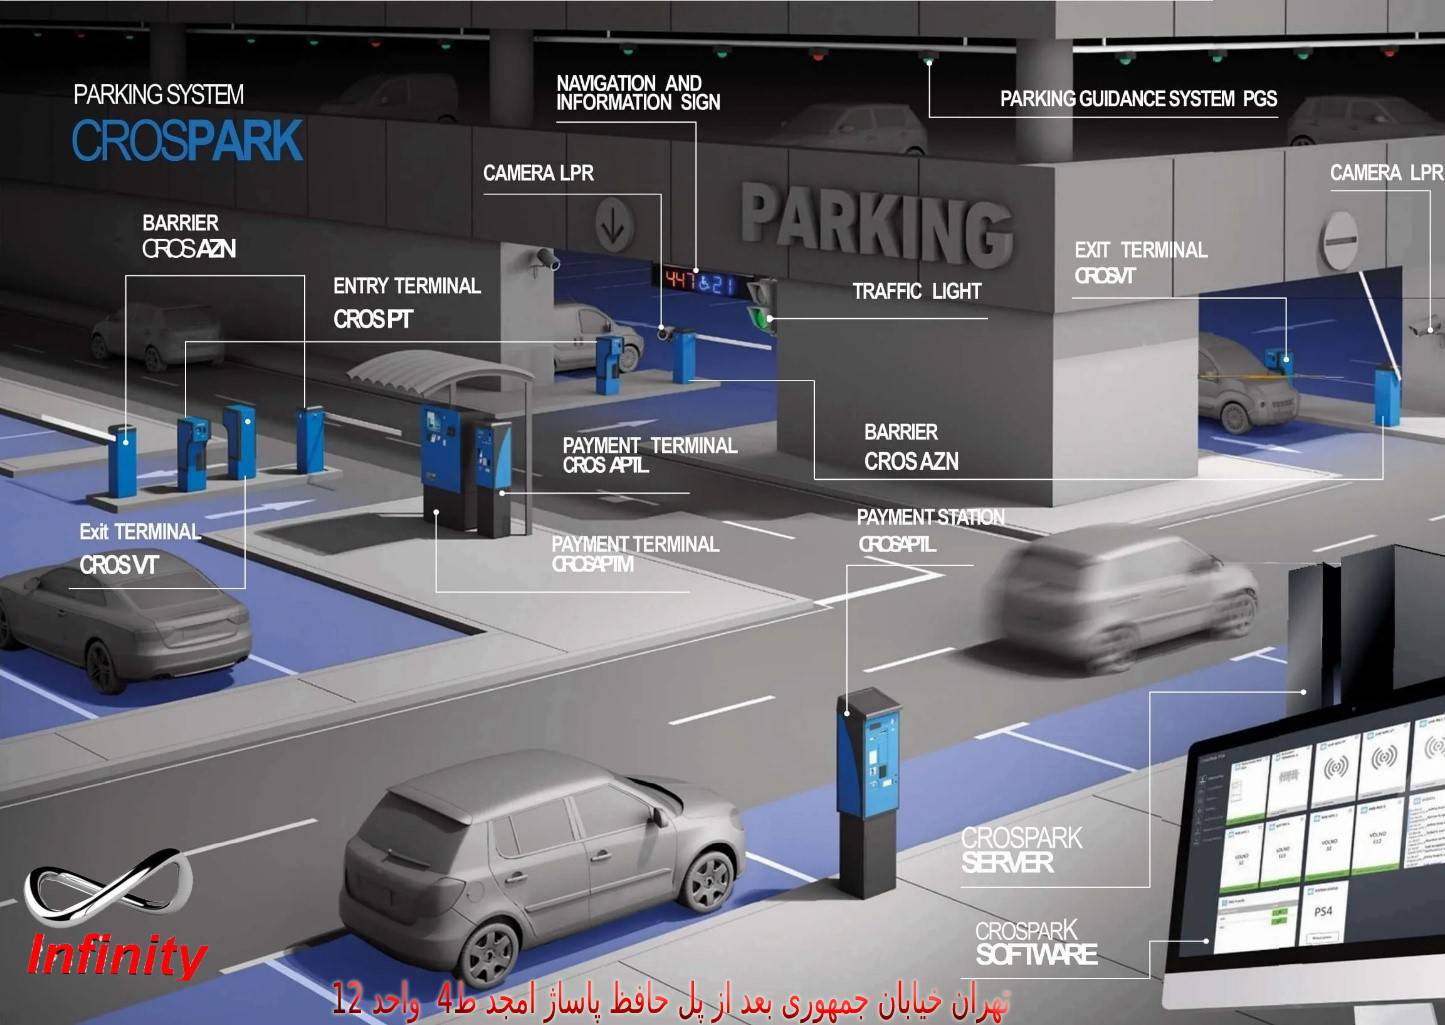  راهکار شرکت داهوا برای پارکینگ هوشمند